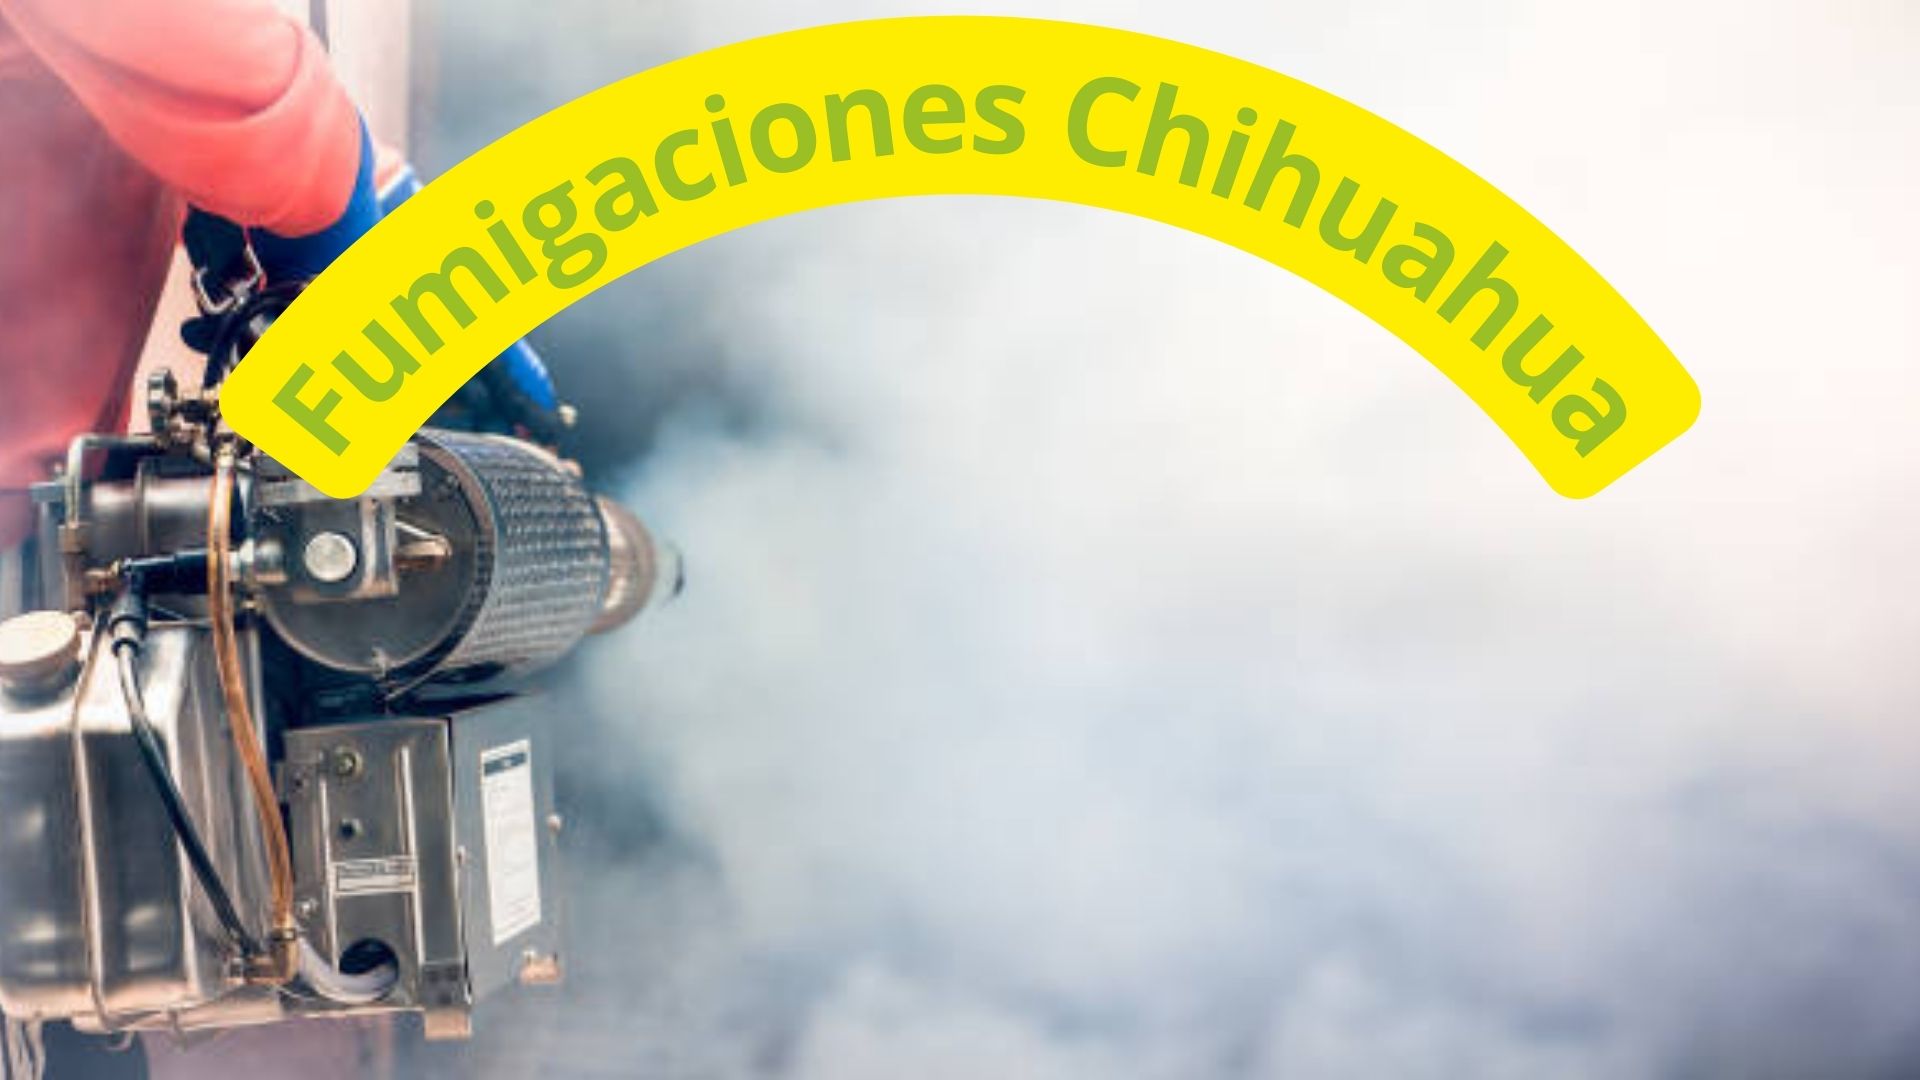 fumigaciones en Chihuahua